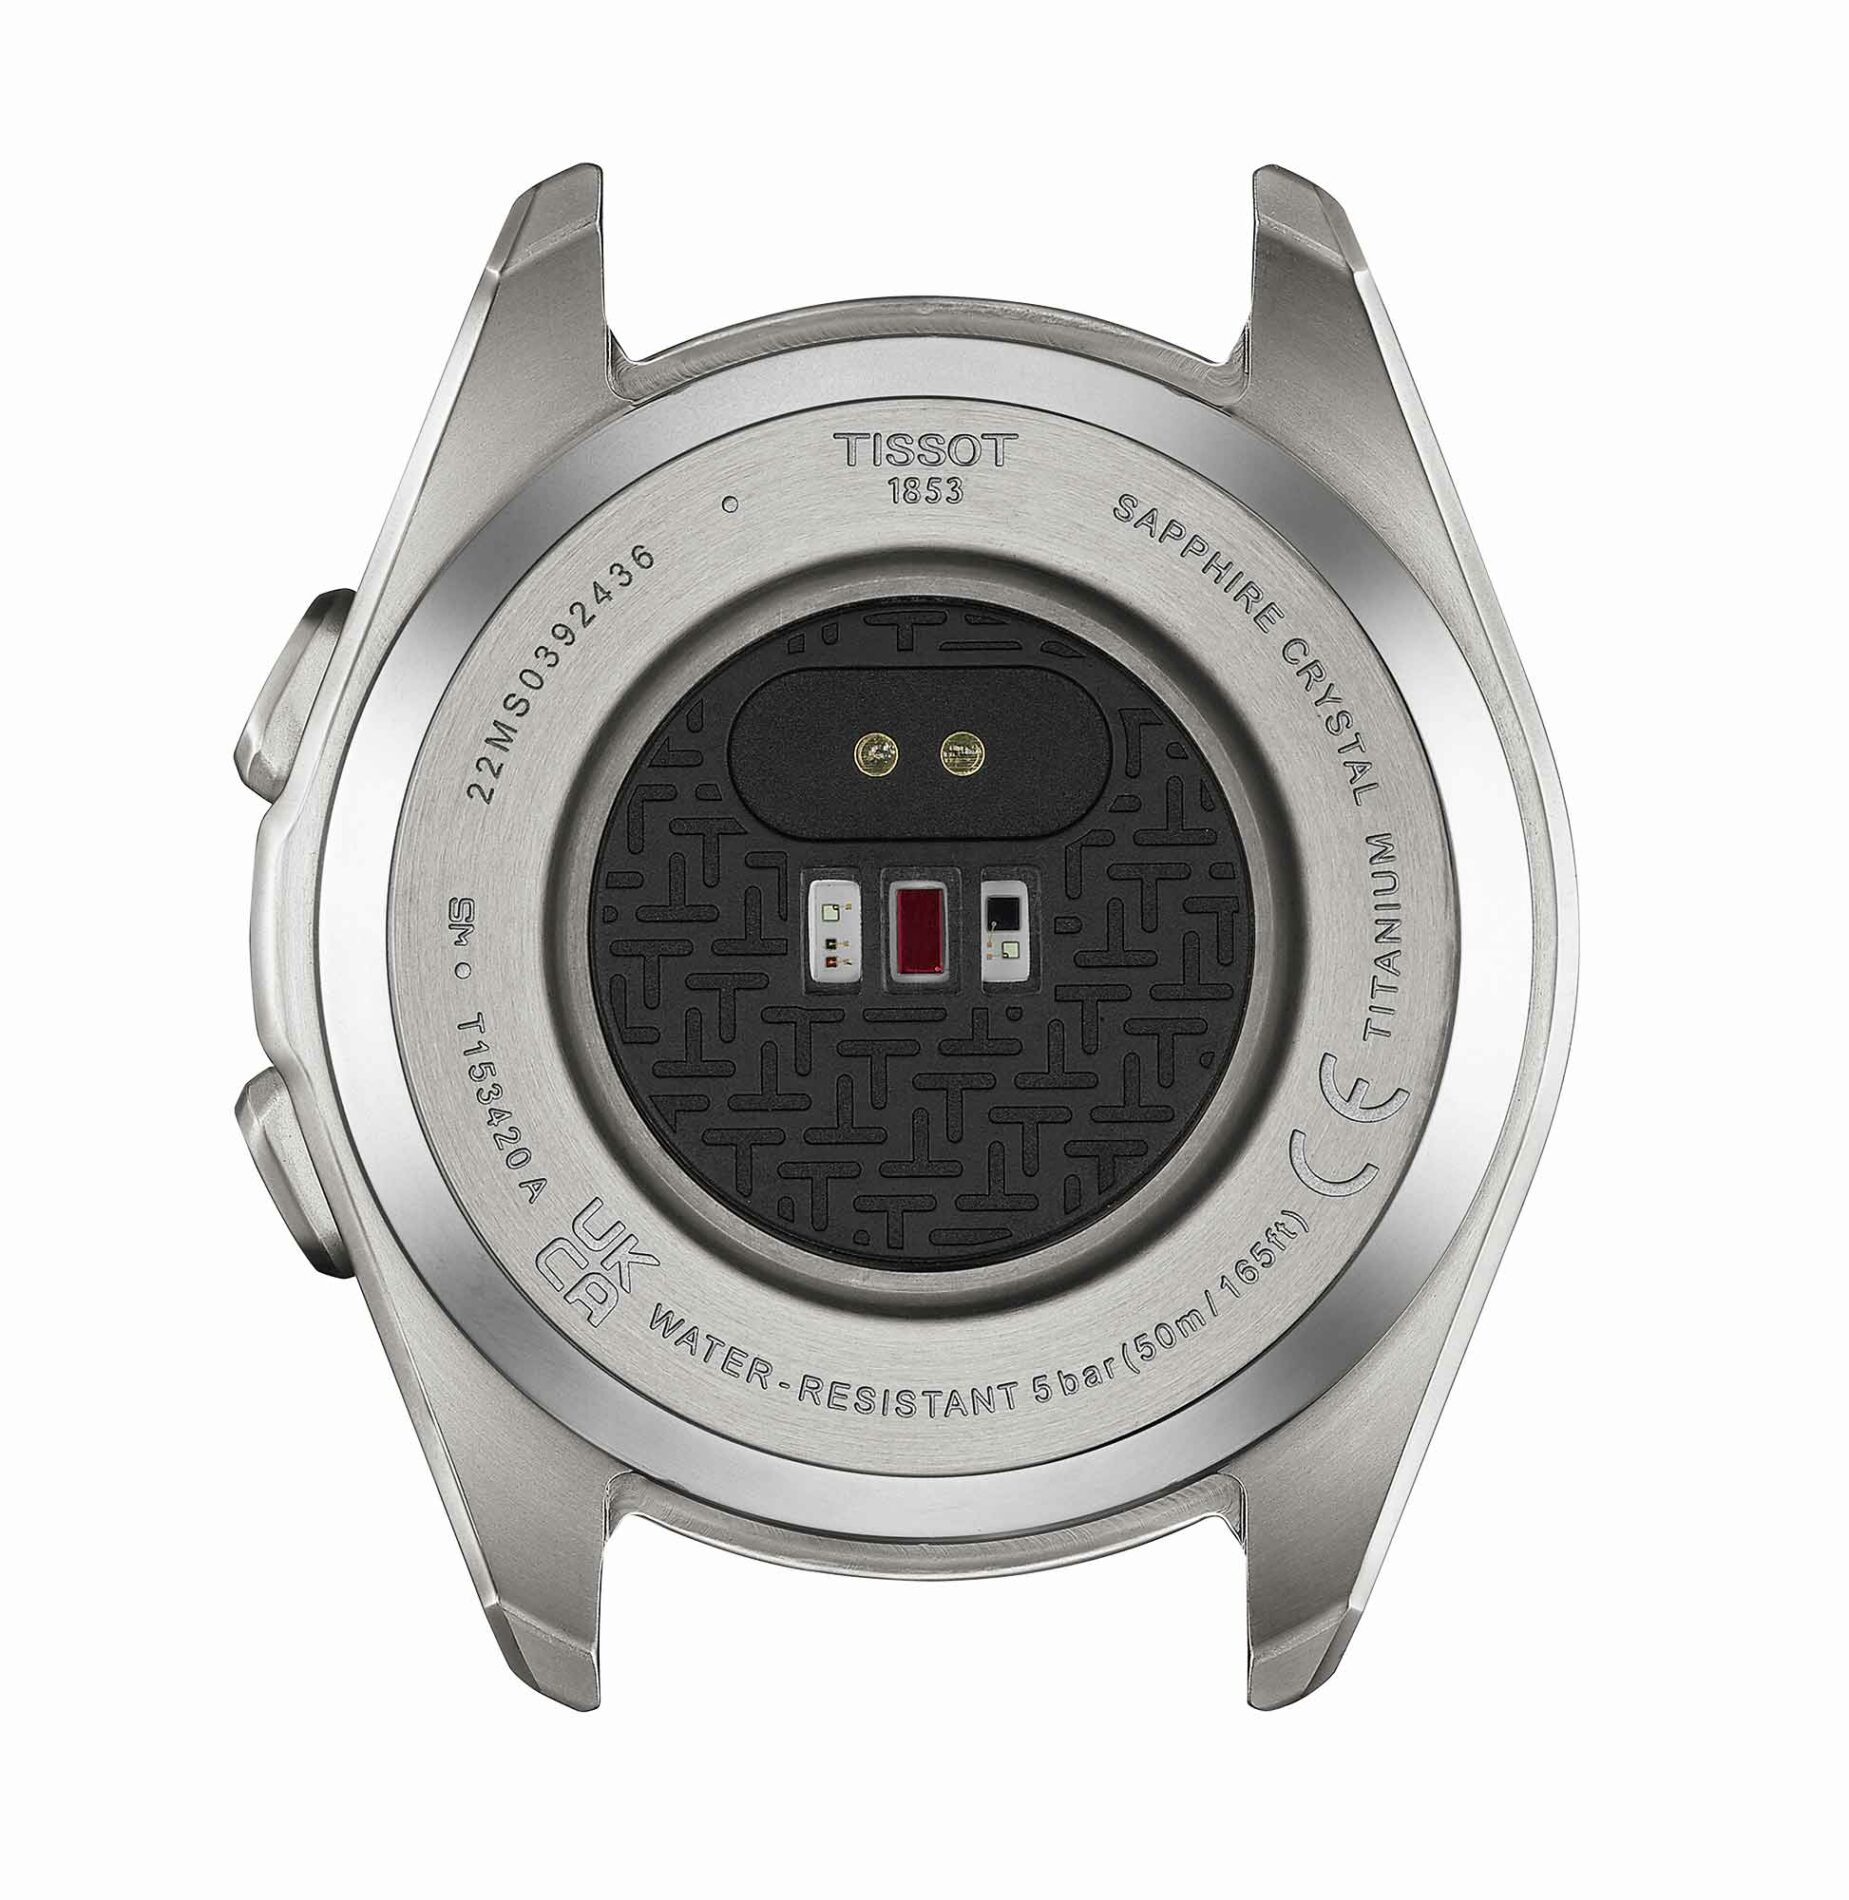 Tissot T-Touch Connect Sport T153.420.44.051.00 - Gioielleria Casavola di Noci - orologio svizzero smartwatch ibrido con cassa in titanio e sensore cardio